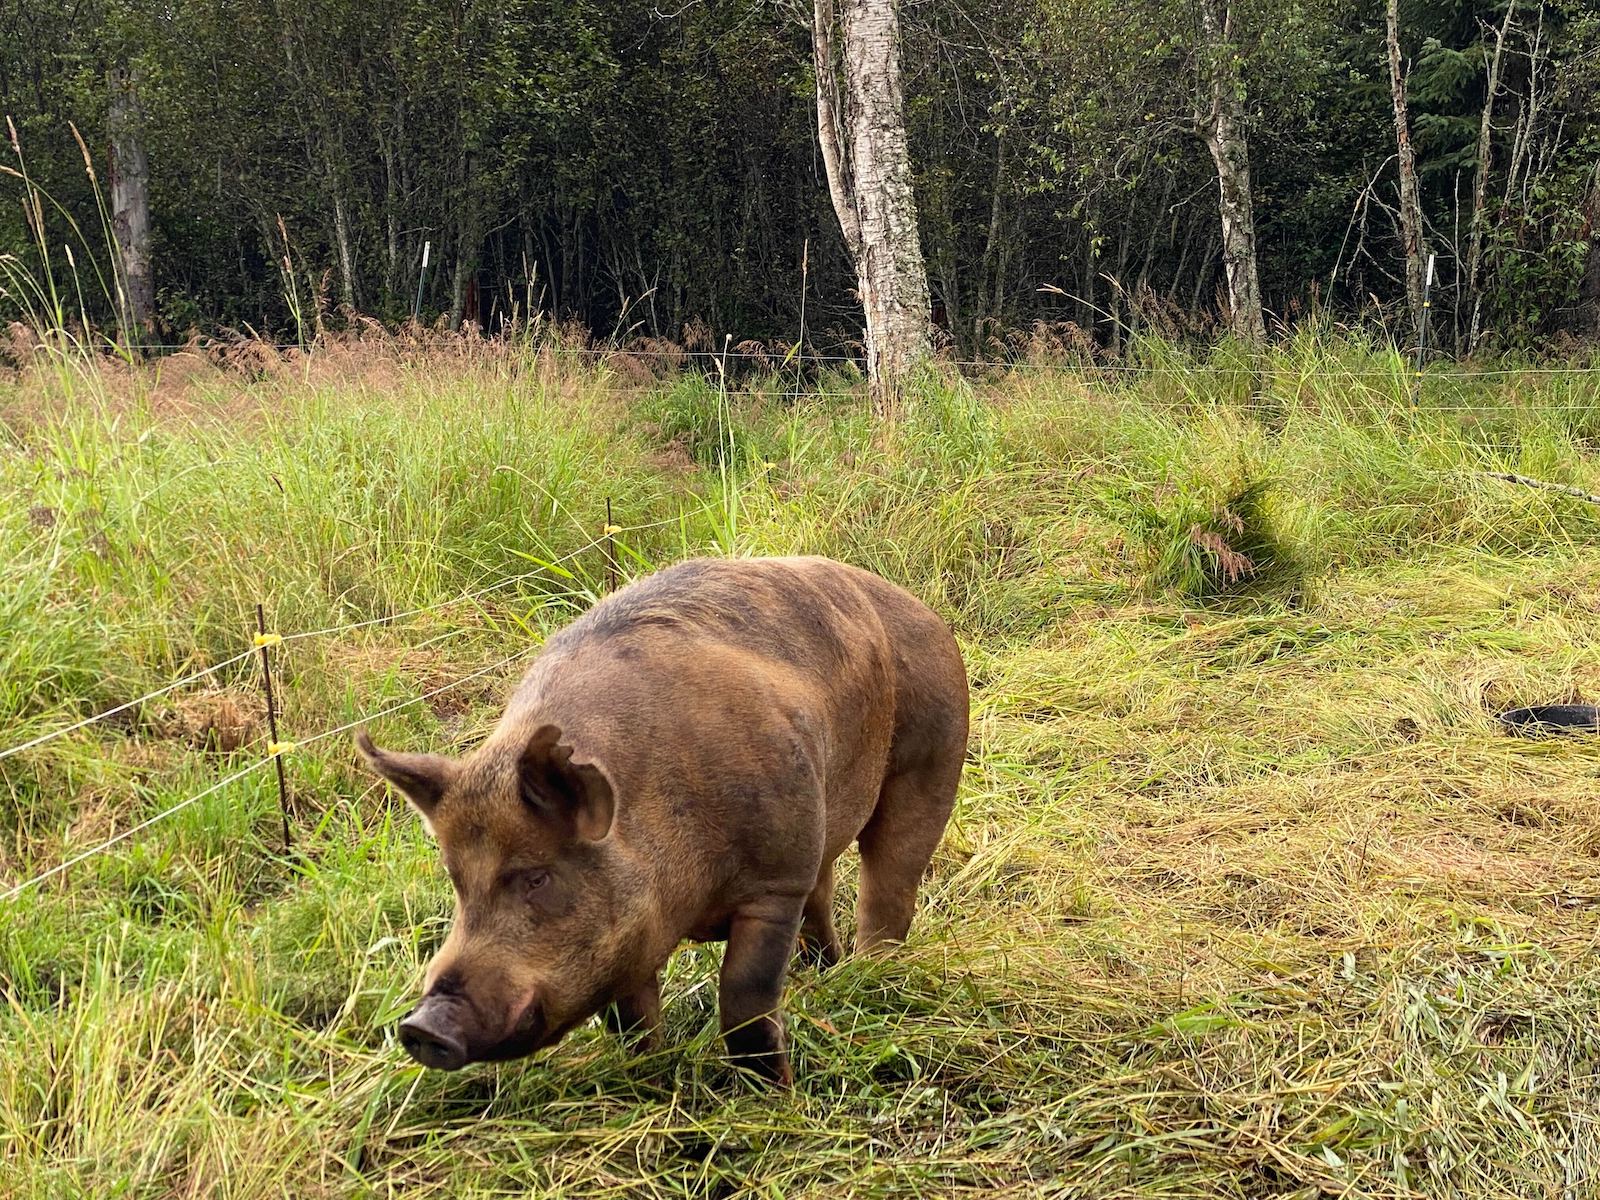 A pig roams a small pasture at a farm in Alaska.